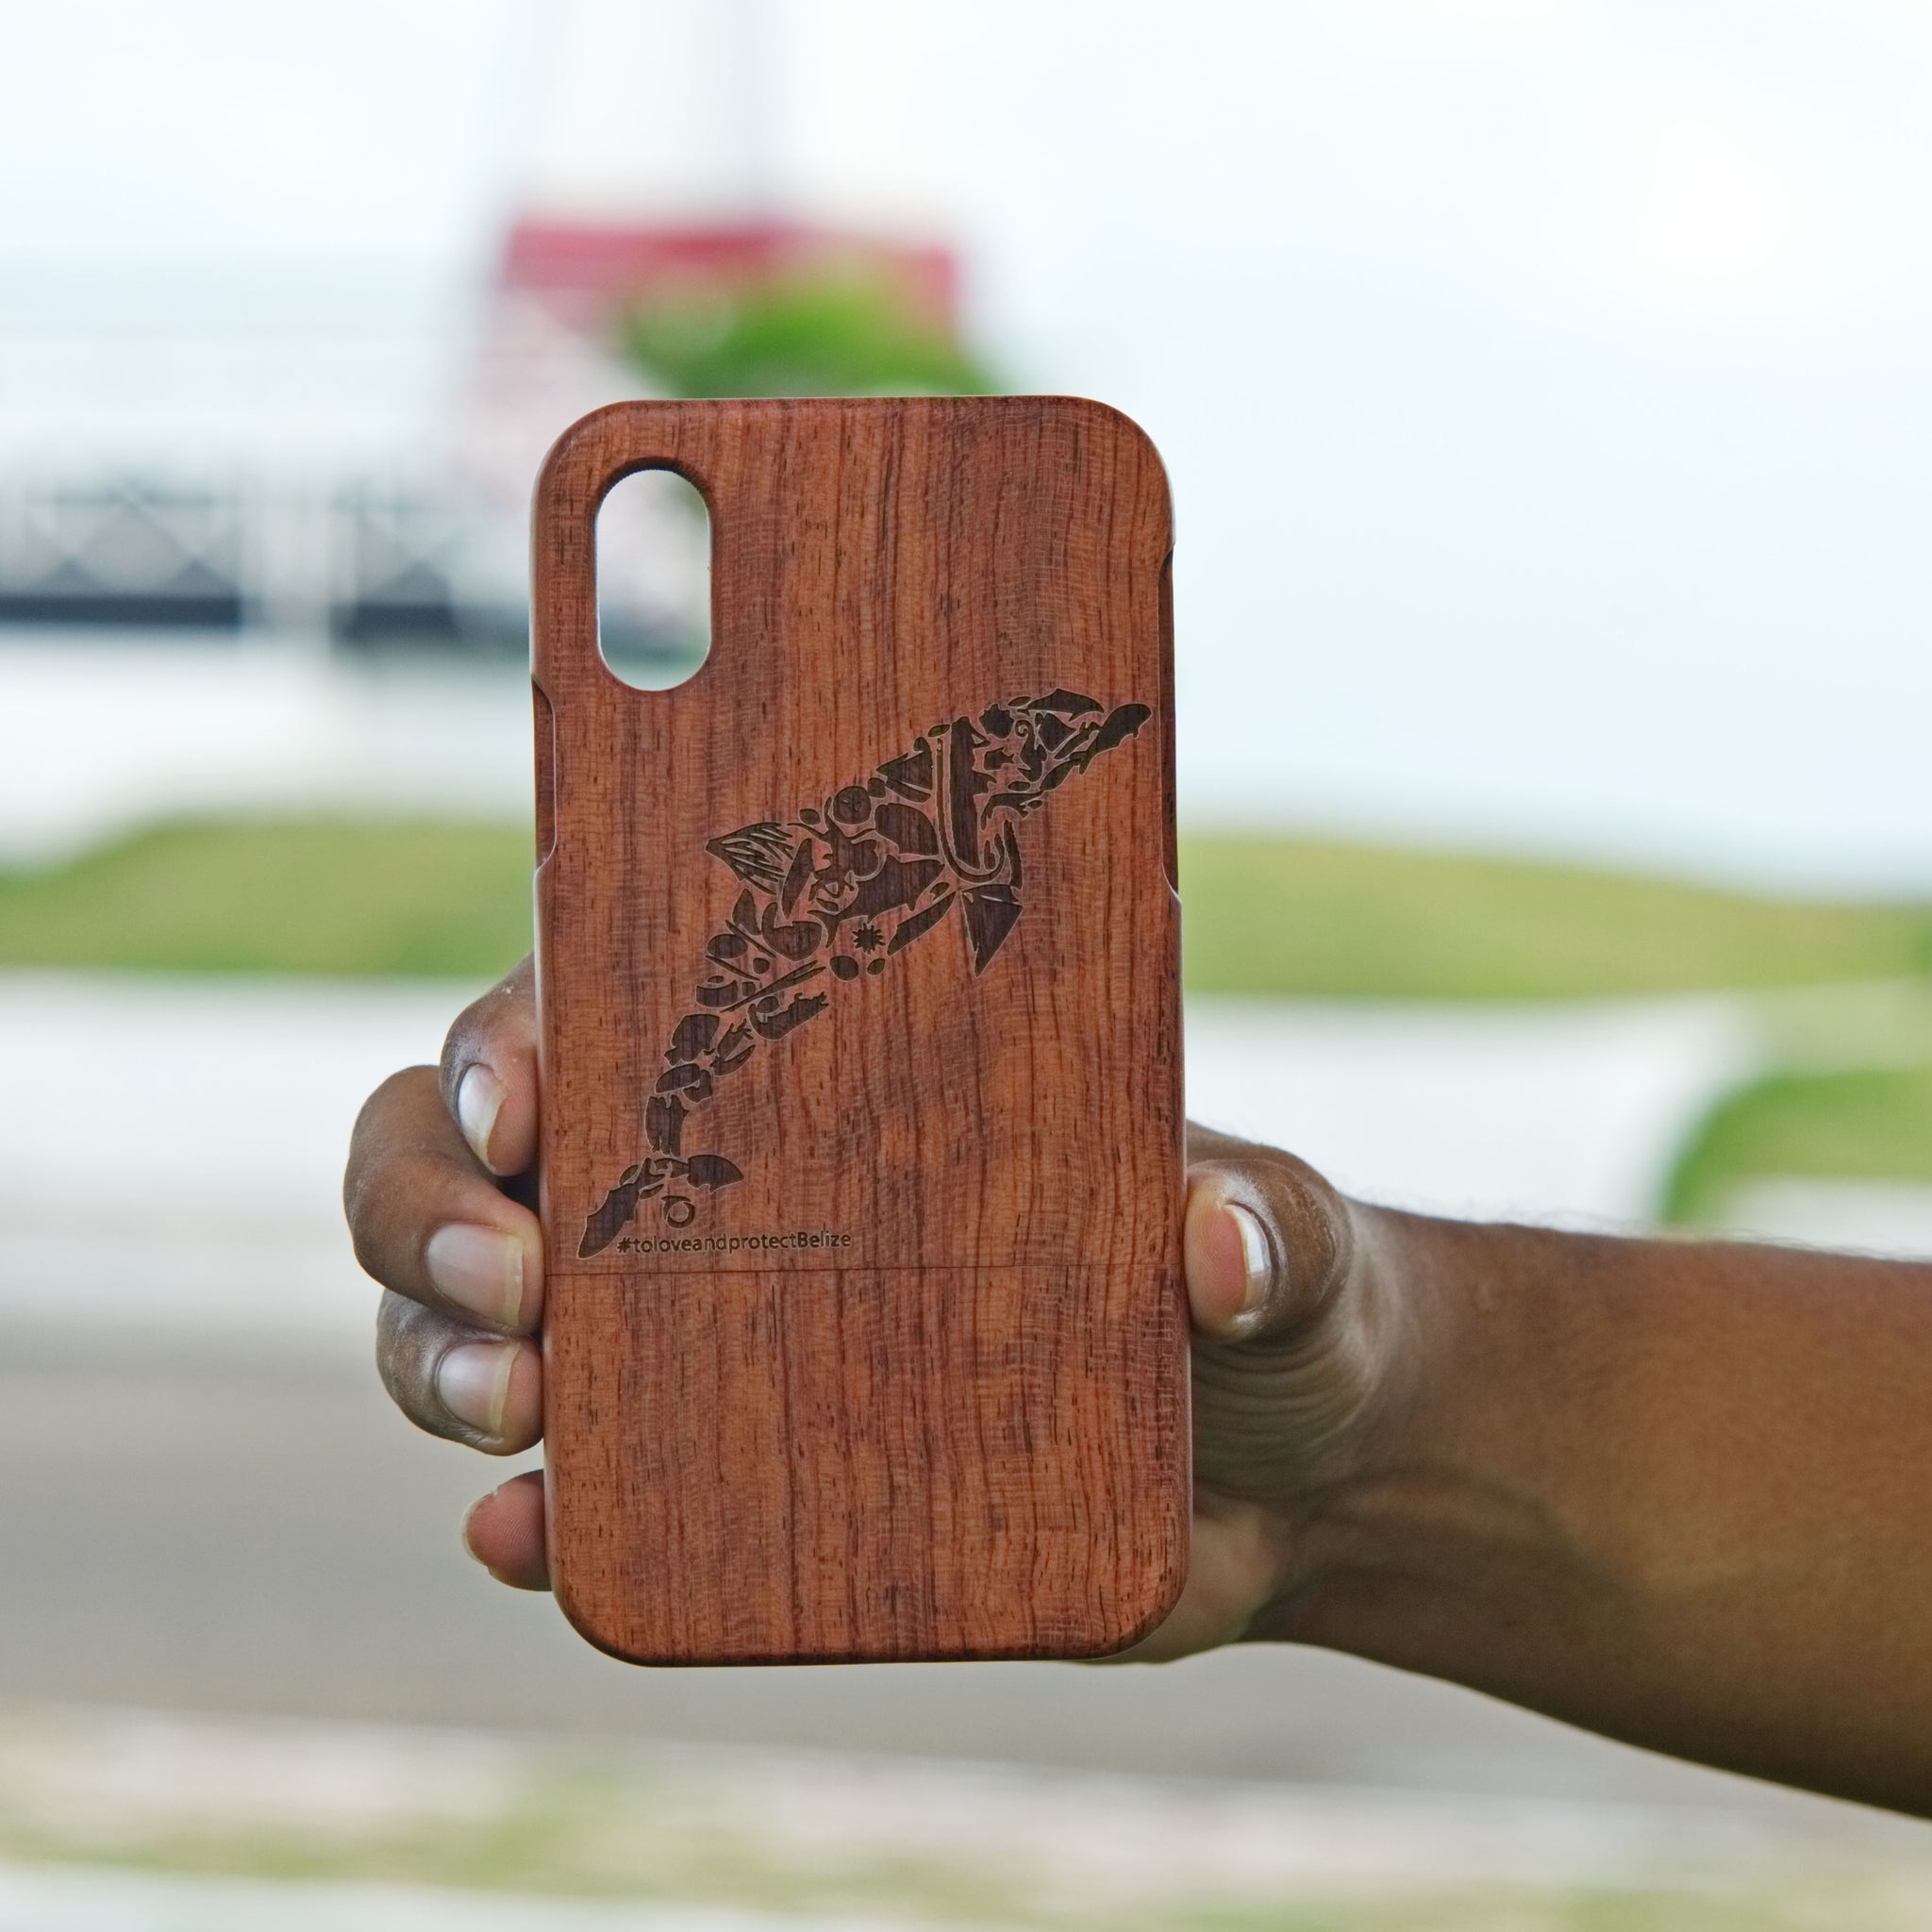 iPhone X (Oceana Belize design)